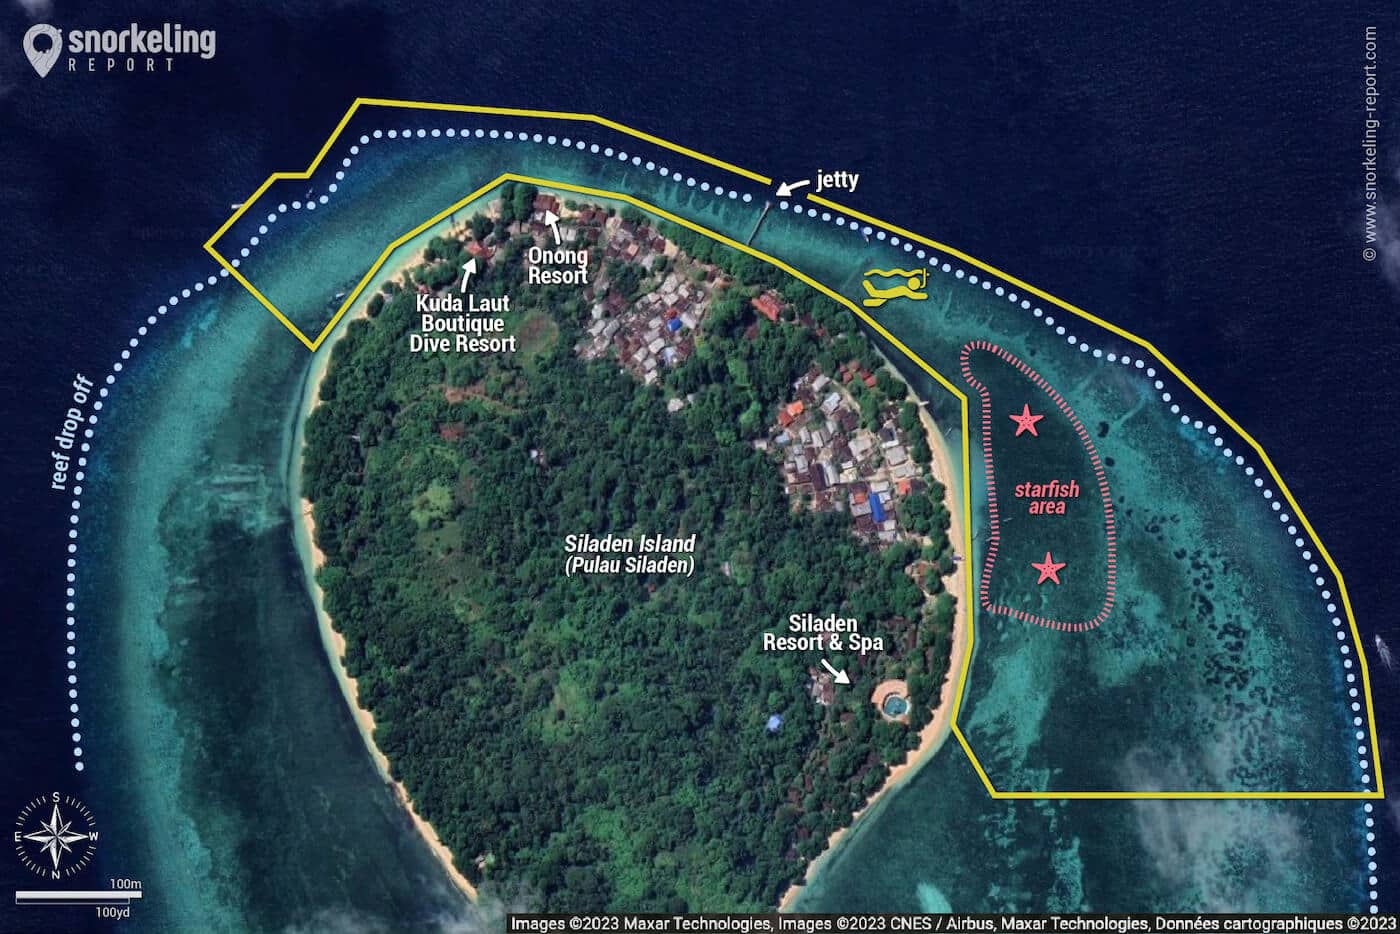 Siladen Island snorkeling map, Manado